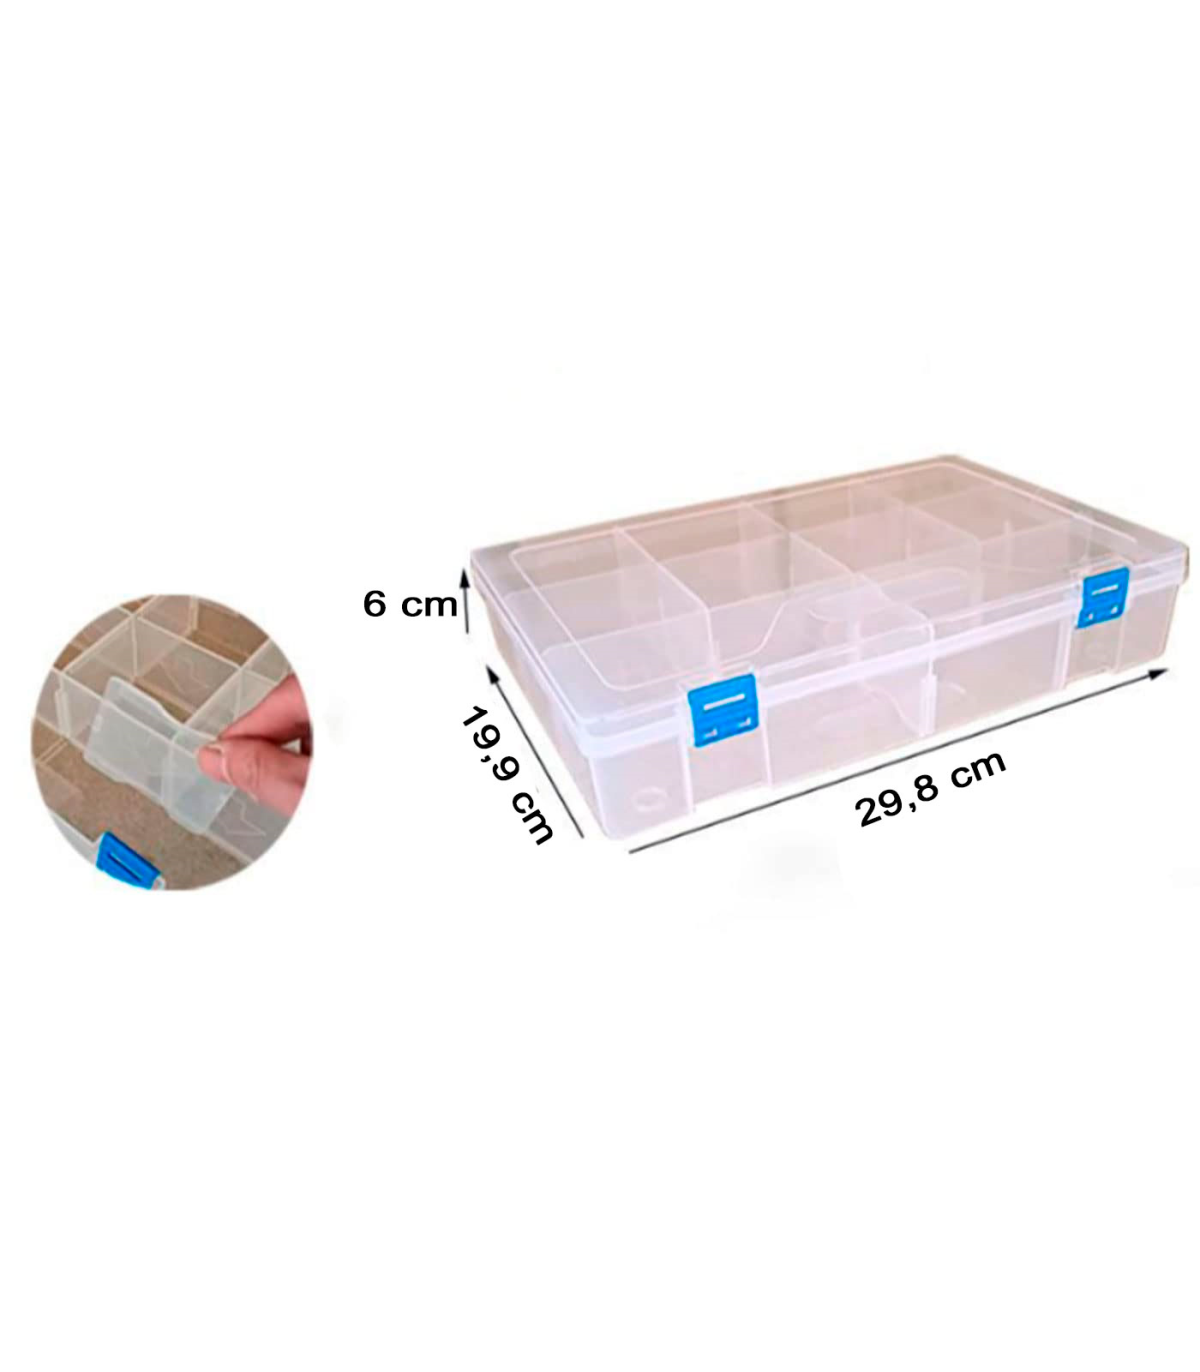 Práctica caja de almacenamiento de plástico con separadores